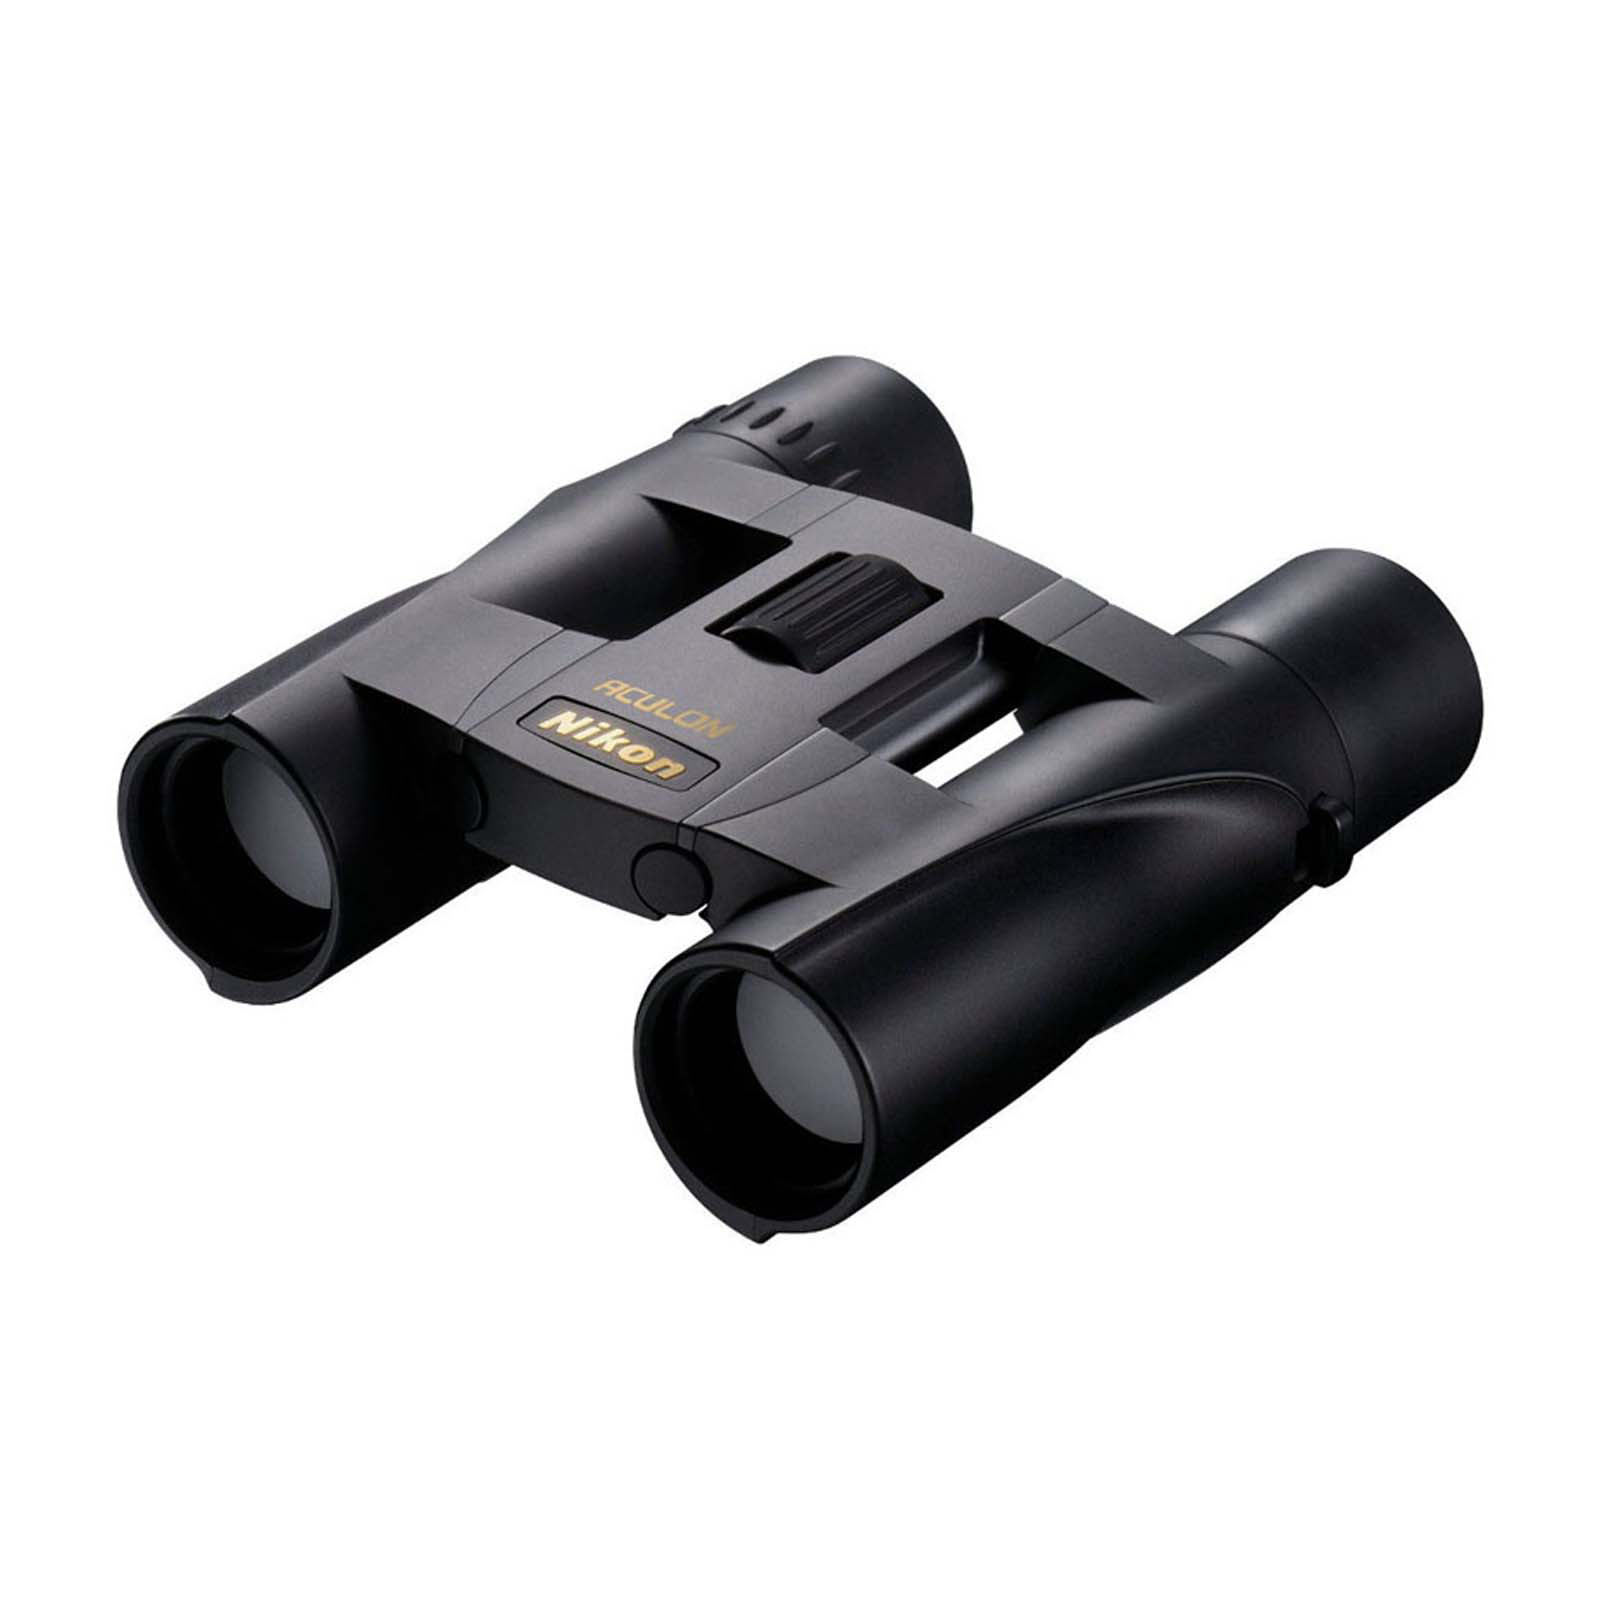 Nikon Aculon A30 8X25 Binoculars - Black